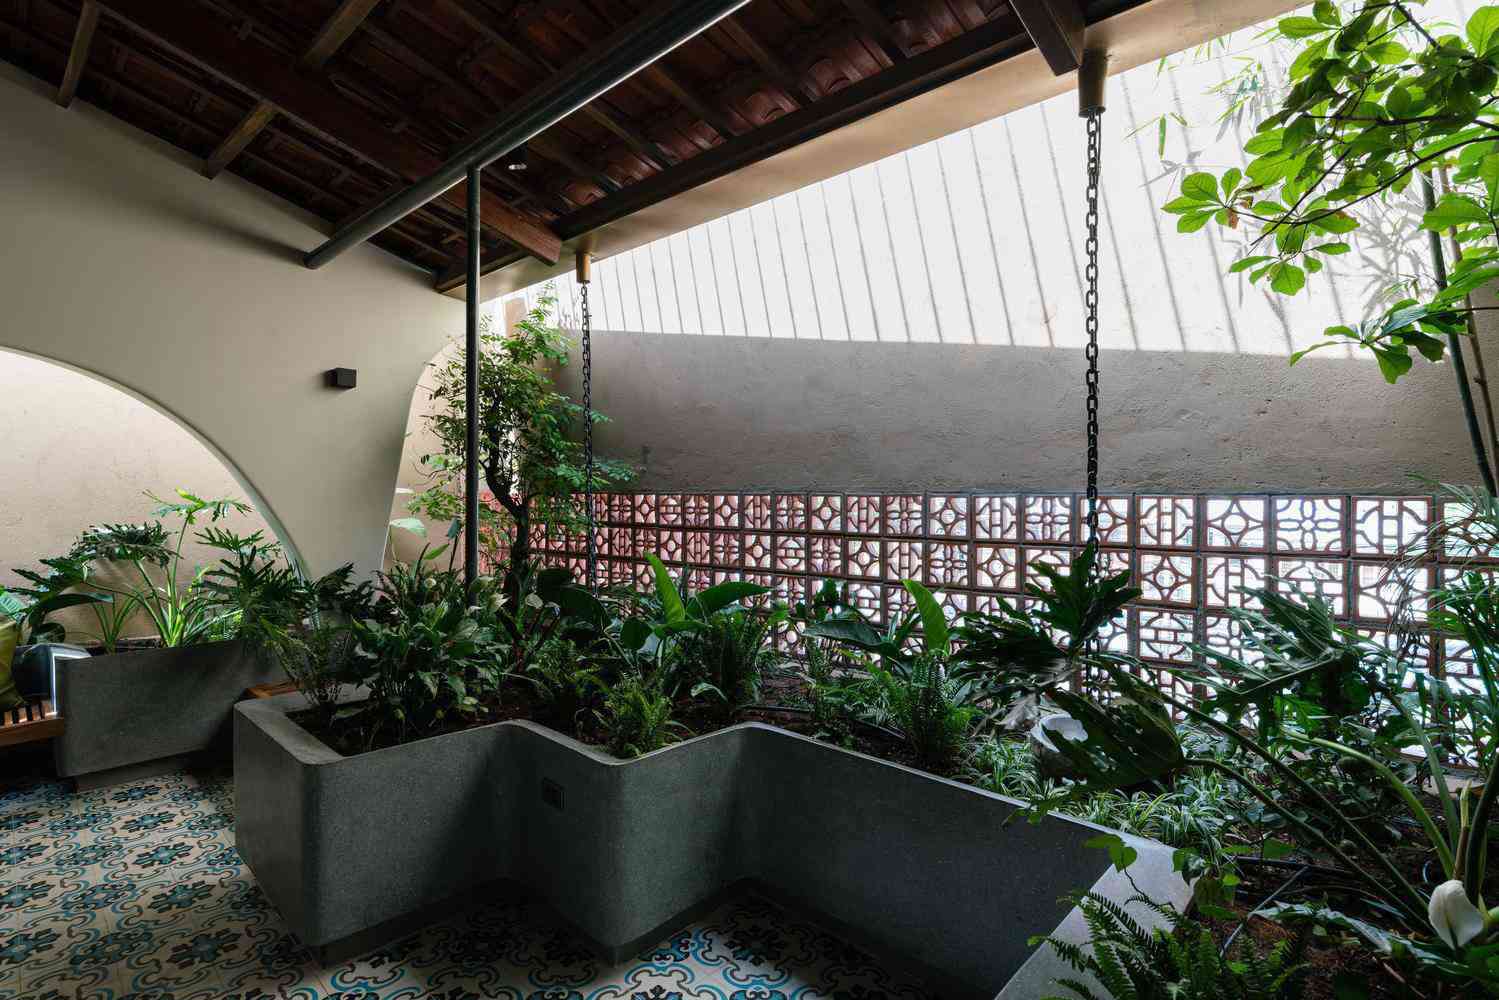 Ngôi nhà mái ngói tuyệt đẹp của người công giáo ở Vũng Tàu - 5 - kythuatcanhtac.com